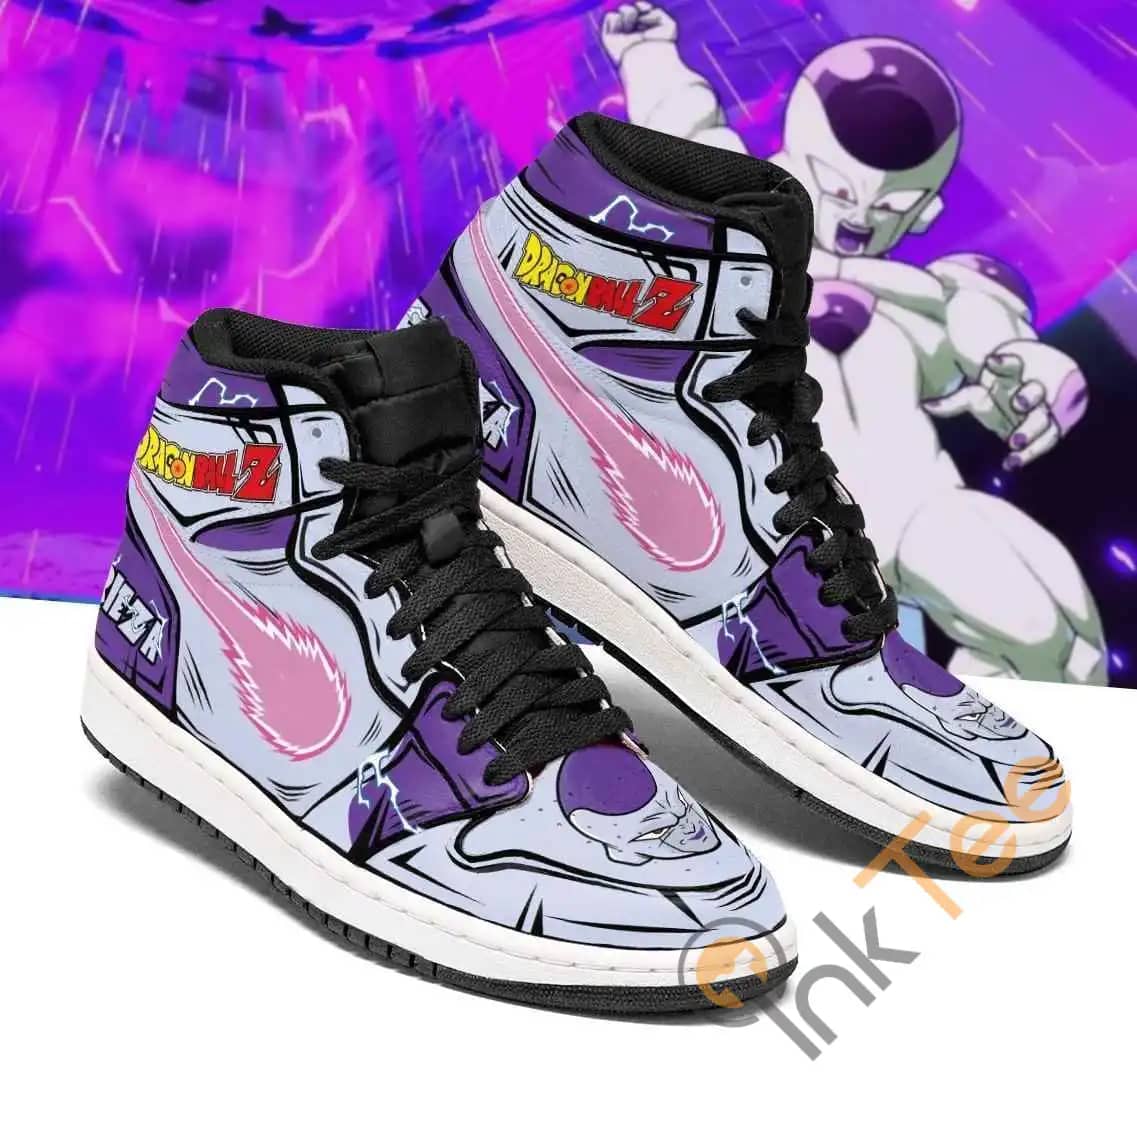 Frieza Dragon Ball Z Anime Sneakers Air Jordan Shoes